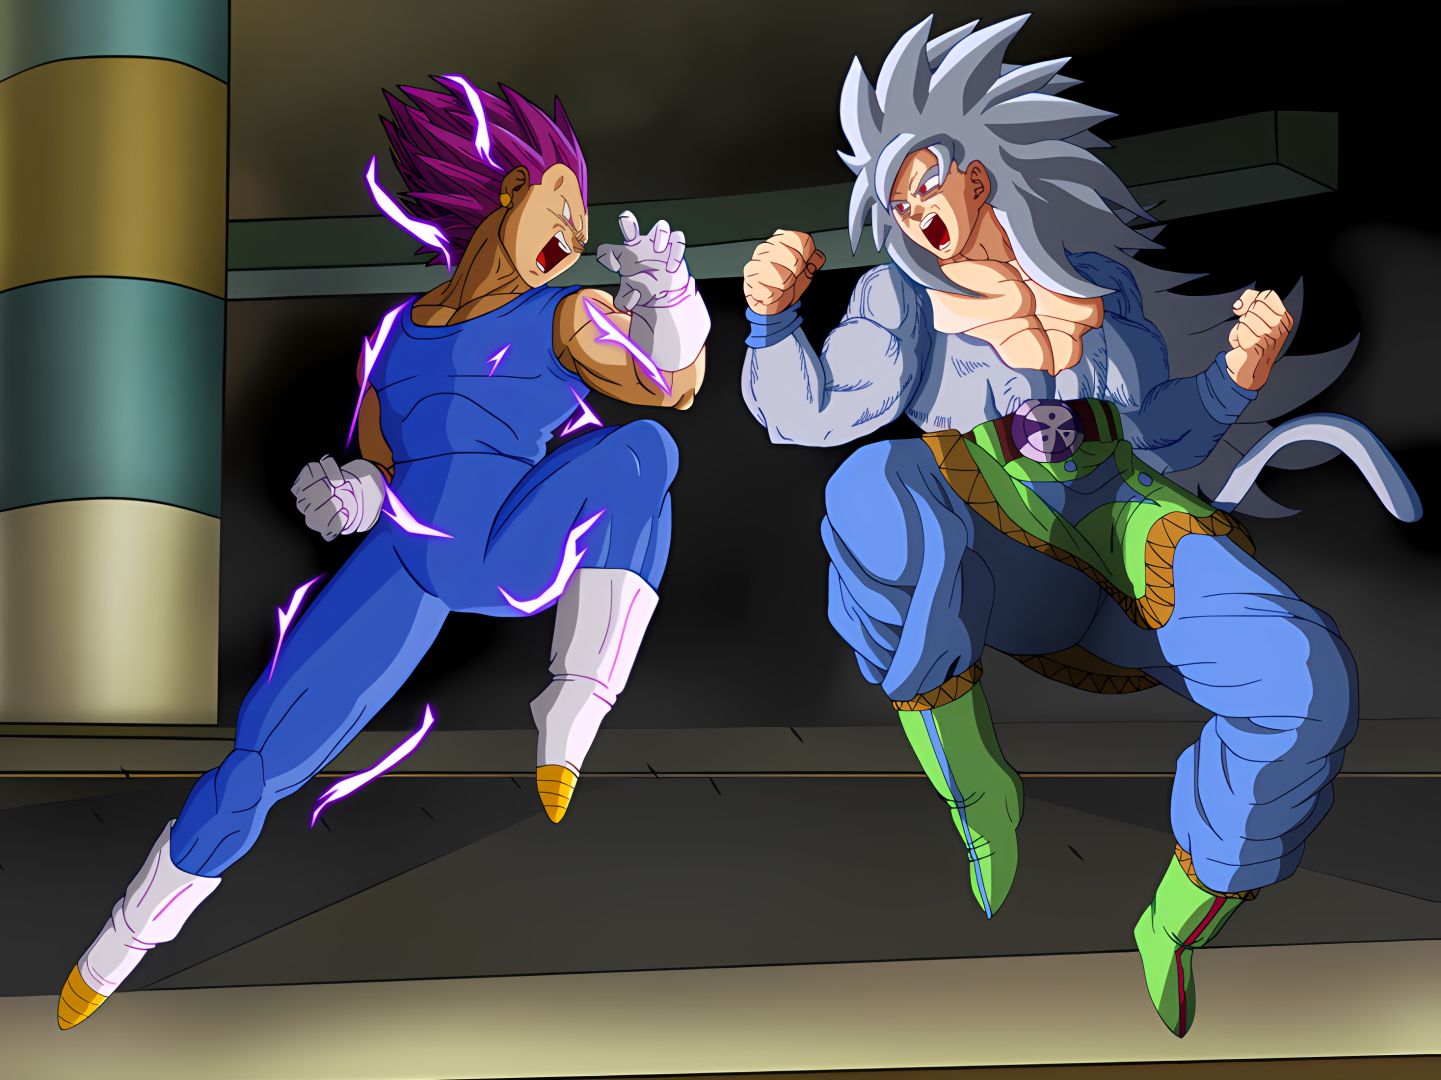 SSJ5 Goku vs Ego Vegeta by SFMHeck on DeviantArt